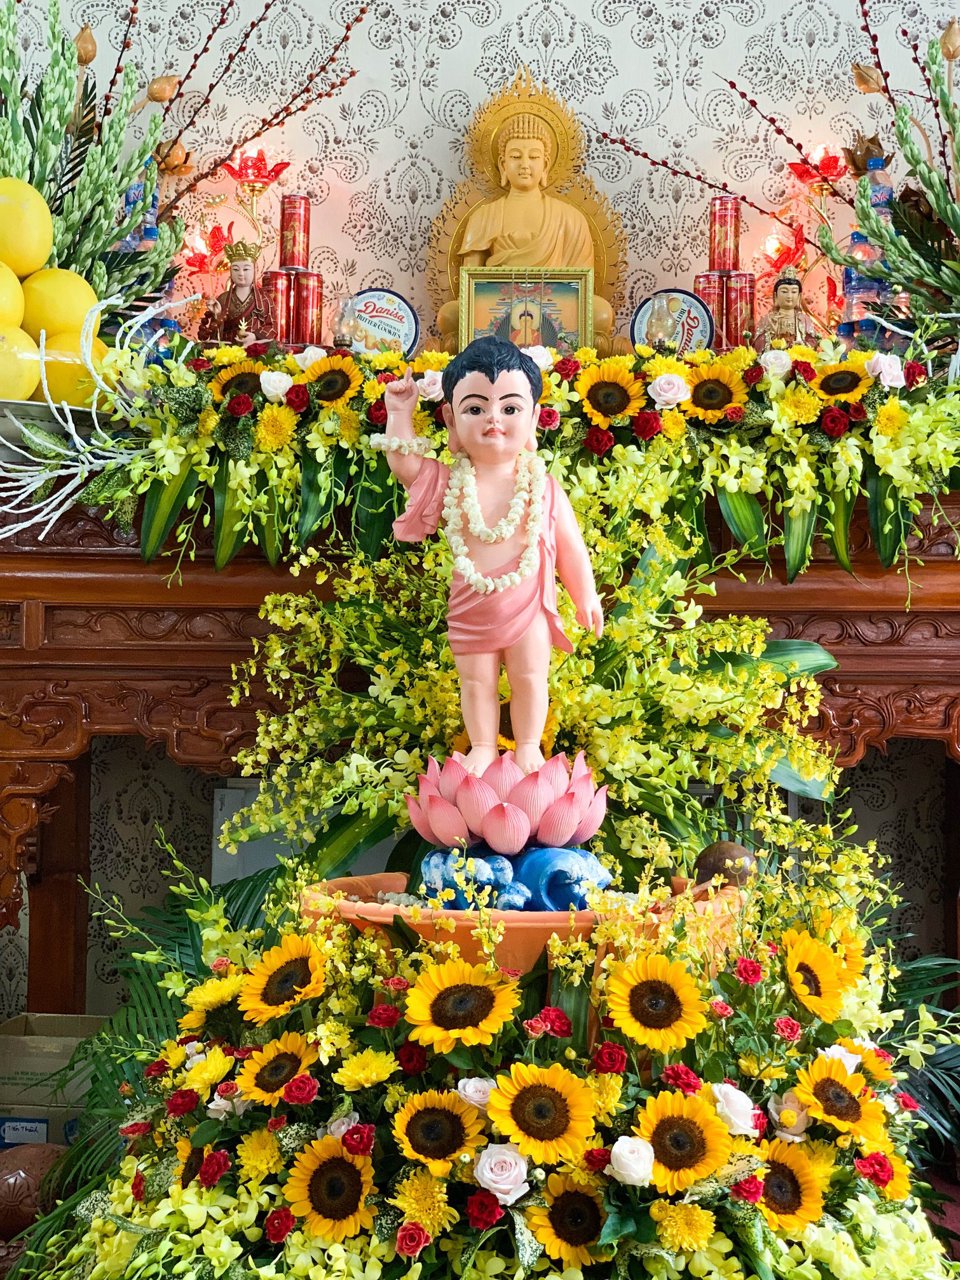 Lễ tắm Phật được phục dựng nhằm taacute;i hiện khung cảnh trang nghiecirc;m, mầu nhiệm khi đức Phật chagrave;o đời.